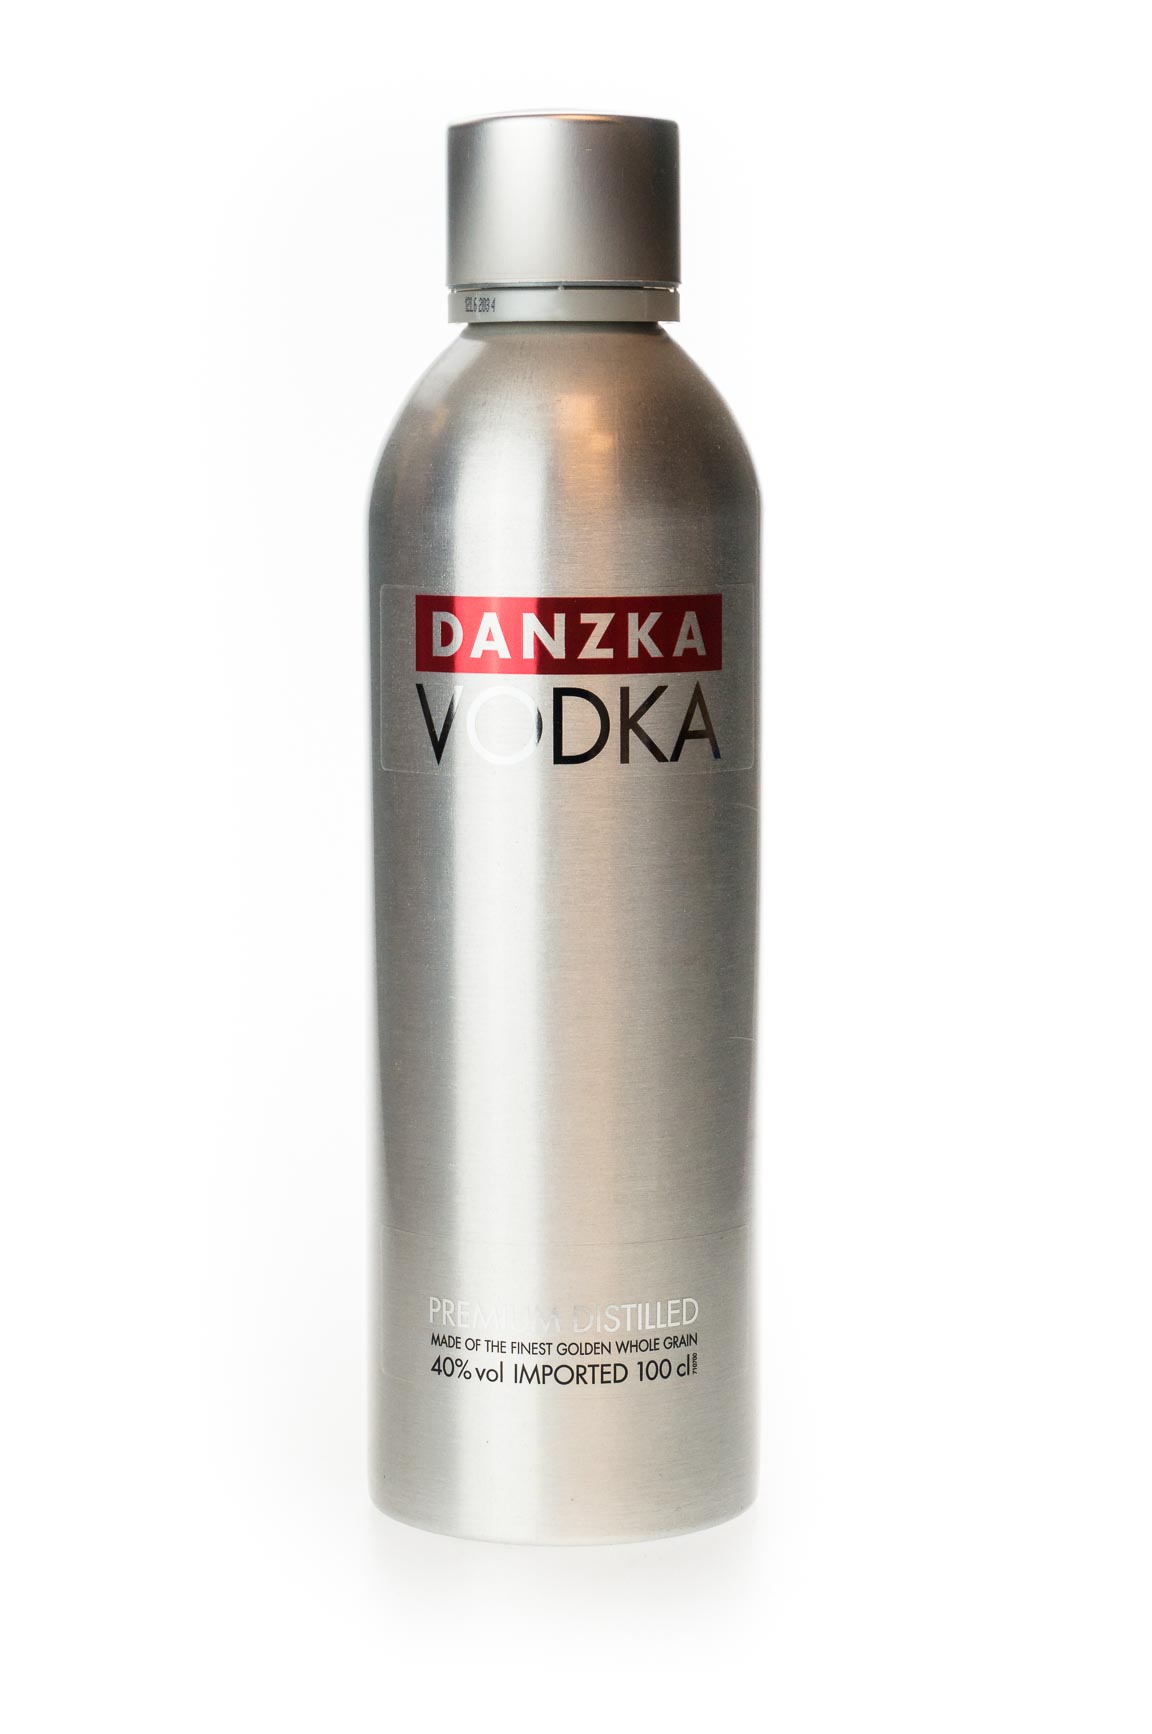 Danzka Vodka Premium günstig Distilled kaufen (1L)